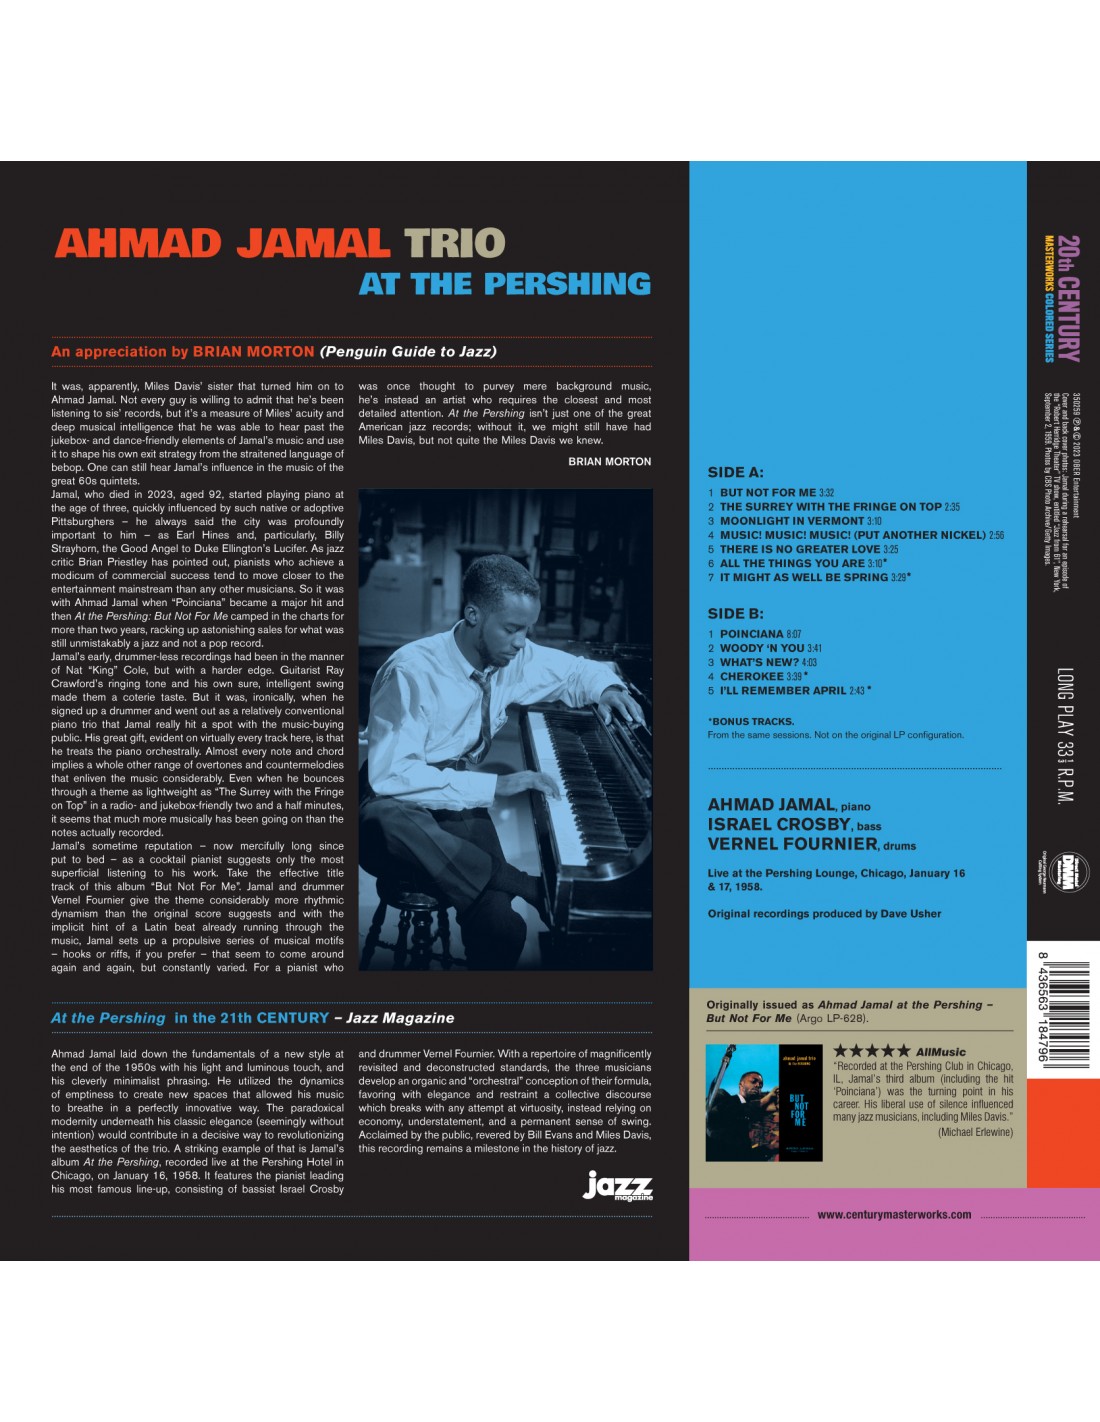 AHMAD JAMAL TRIO - AT THE PERSHING + 4 BONUS TRACKS